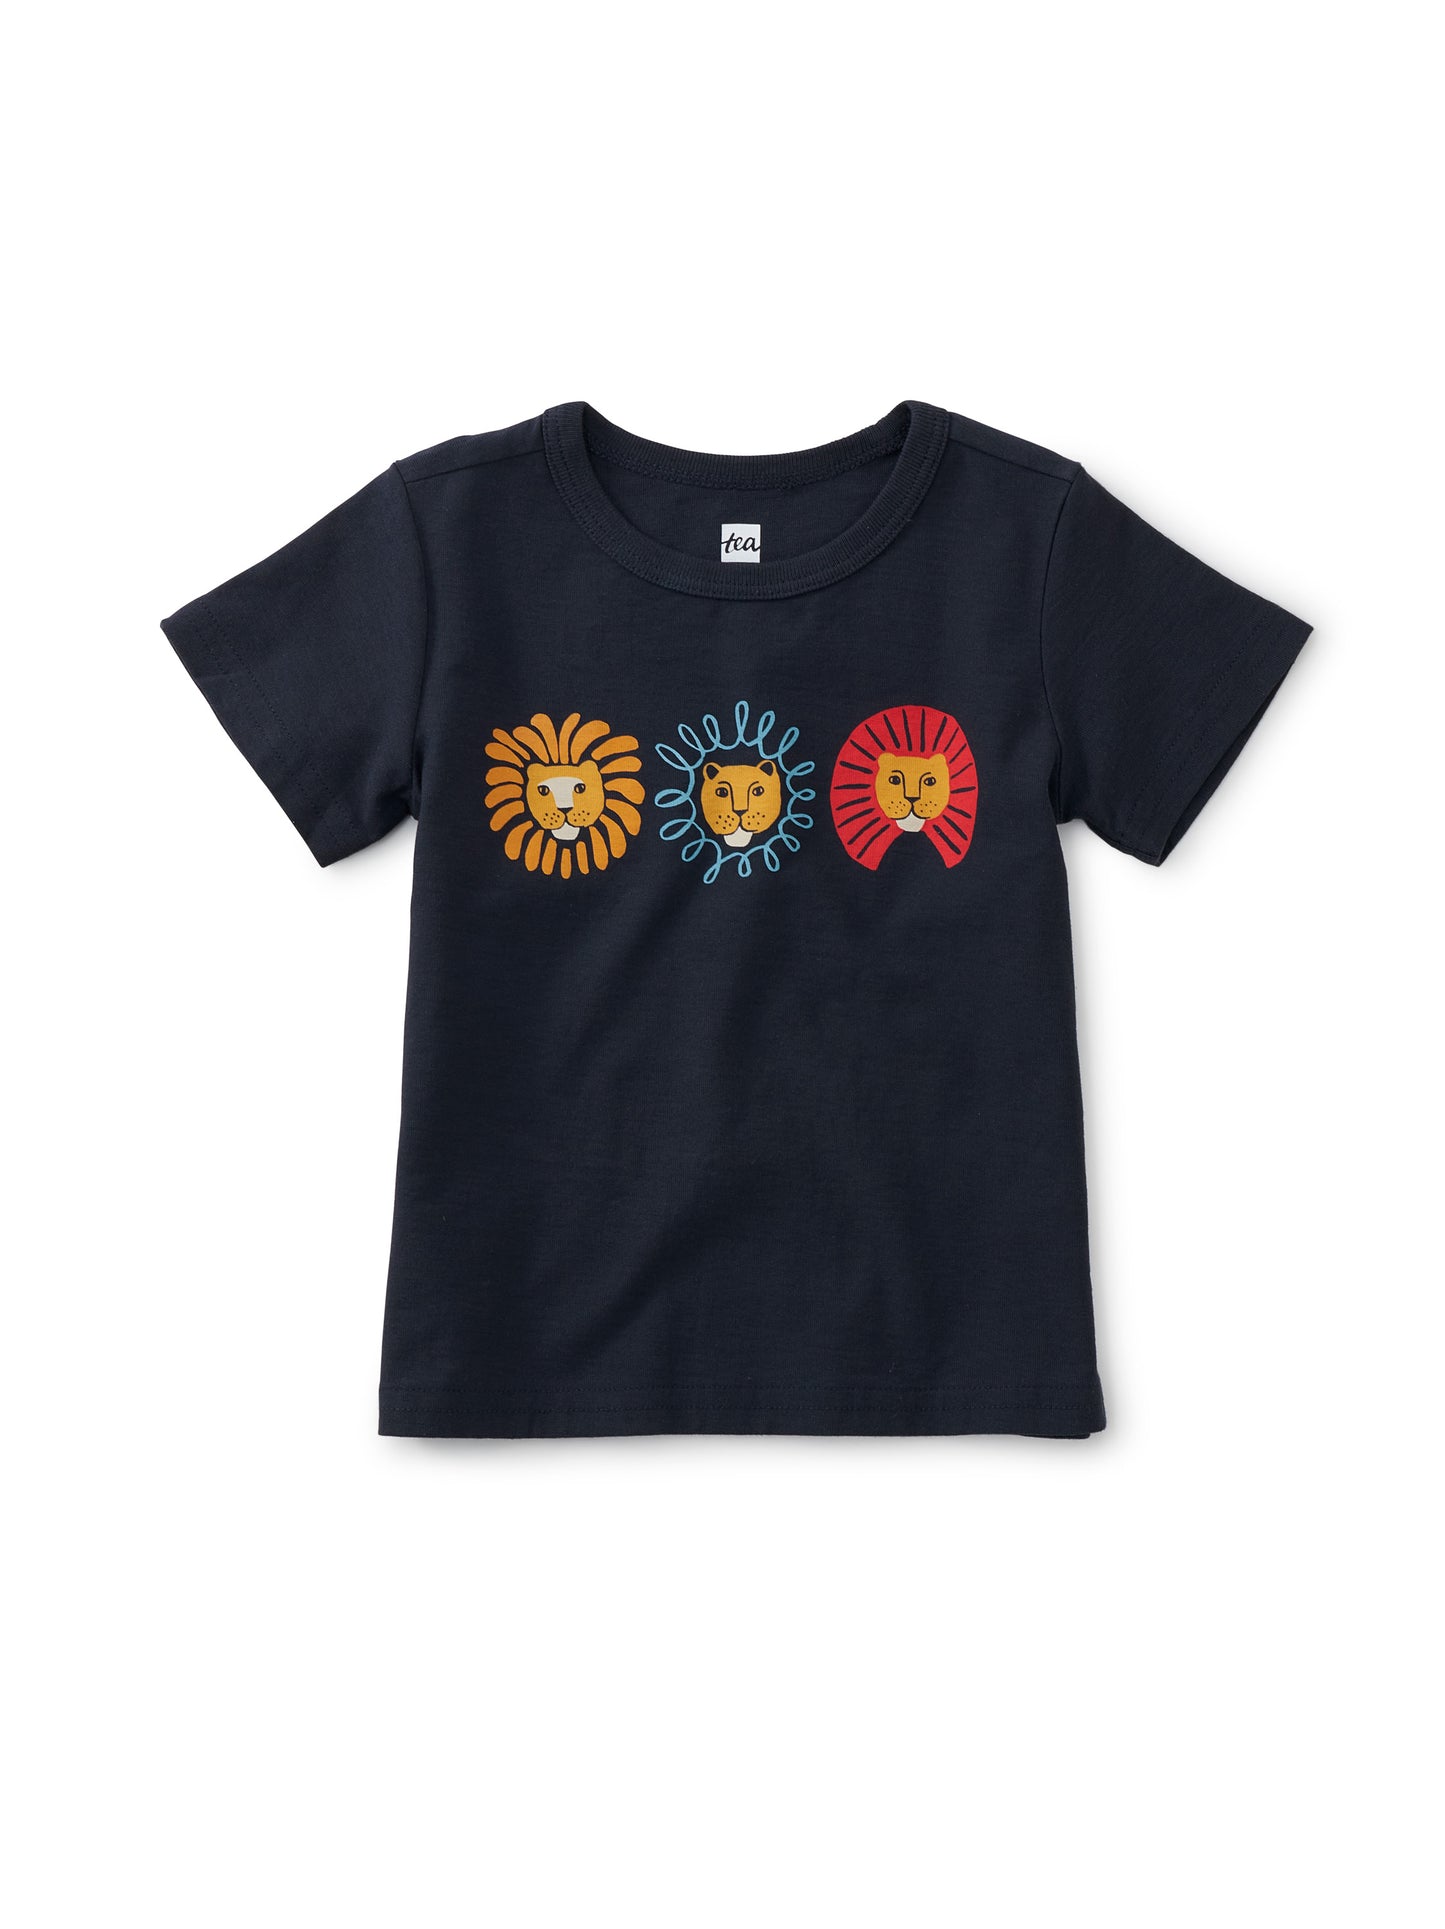 Lion Masks Baby Graphic Tee: Indigo